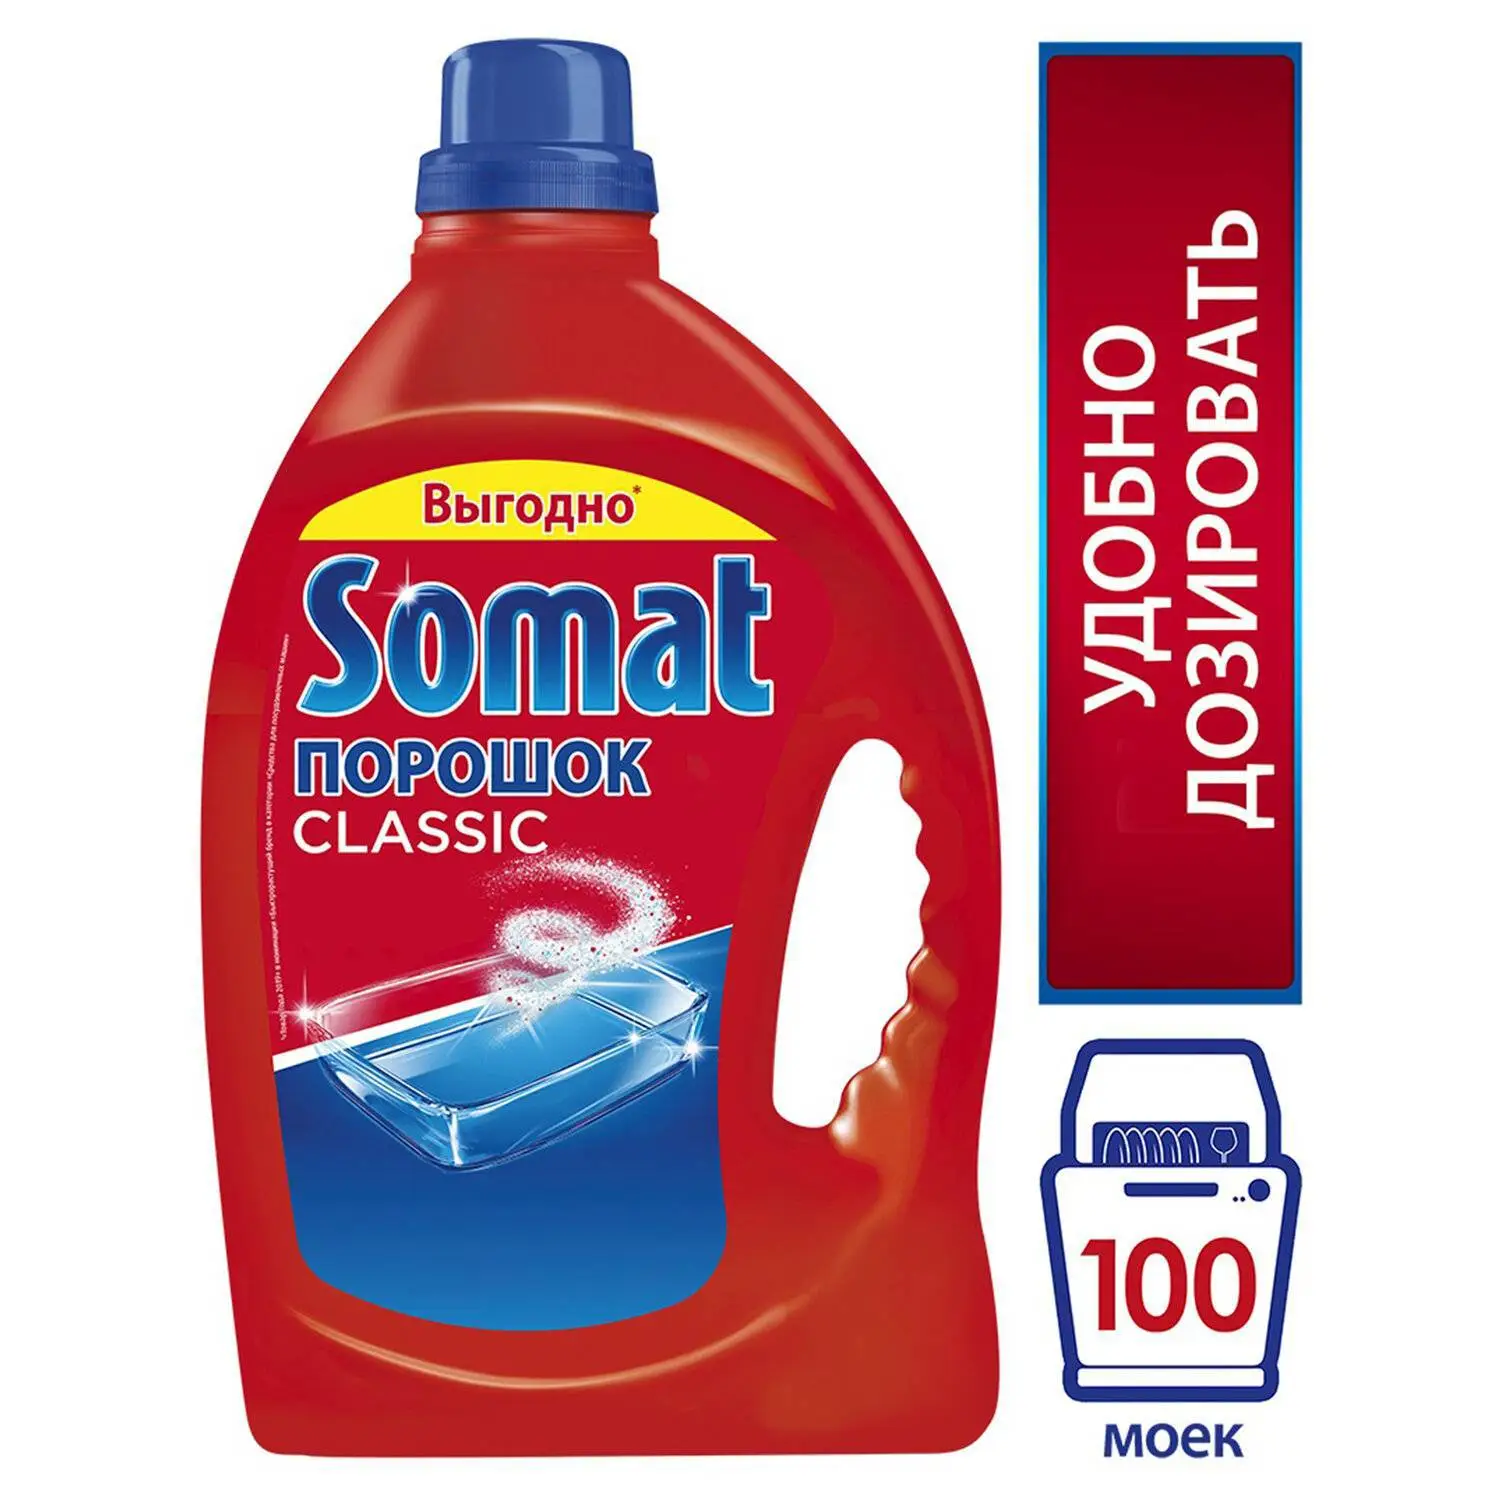 imagen-de-detergente-somat-mercadona